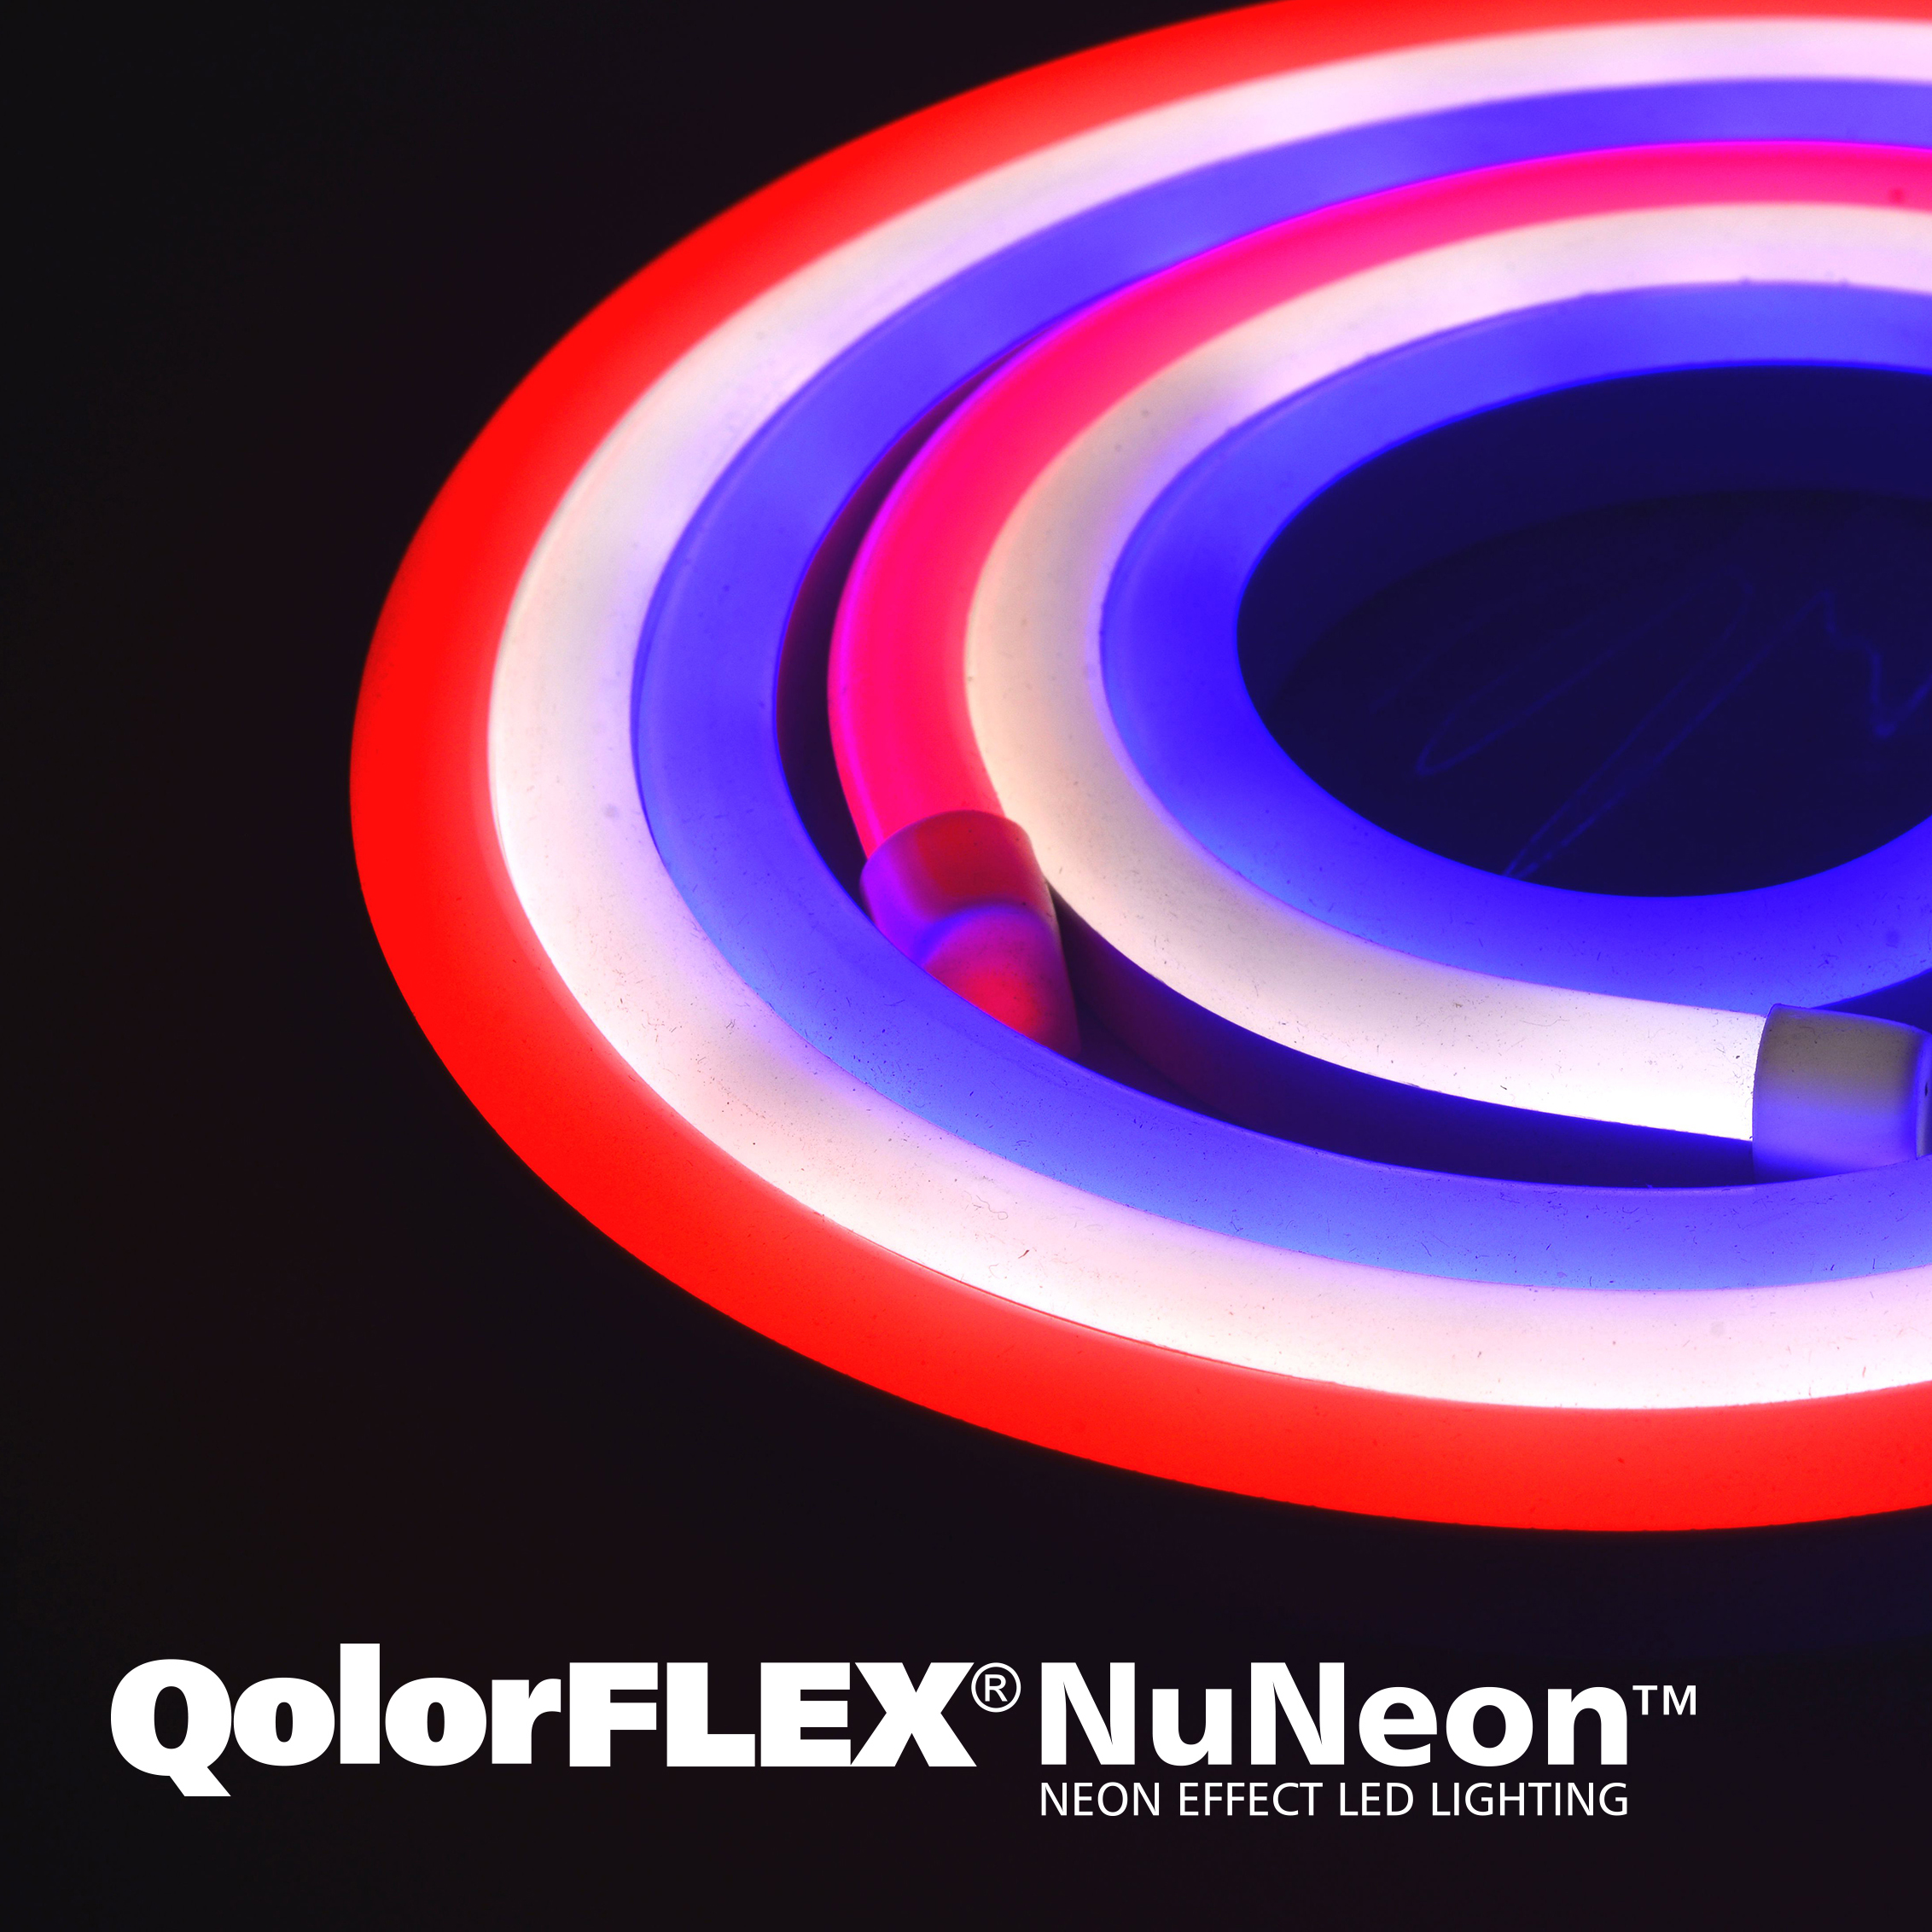 QolorFLEX NuNeon varieties